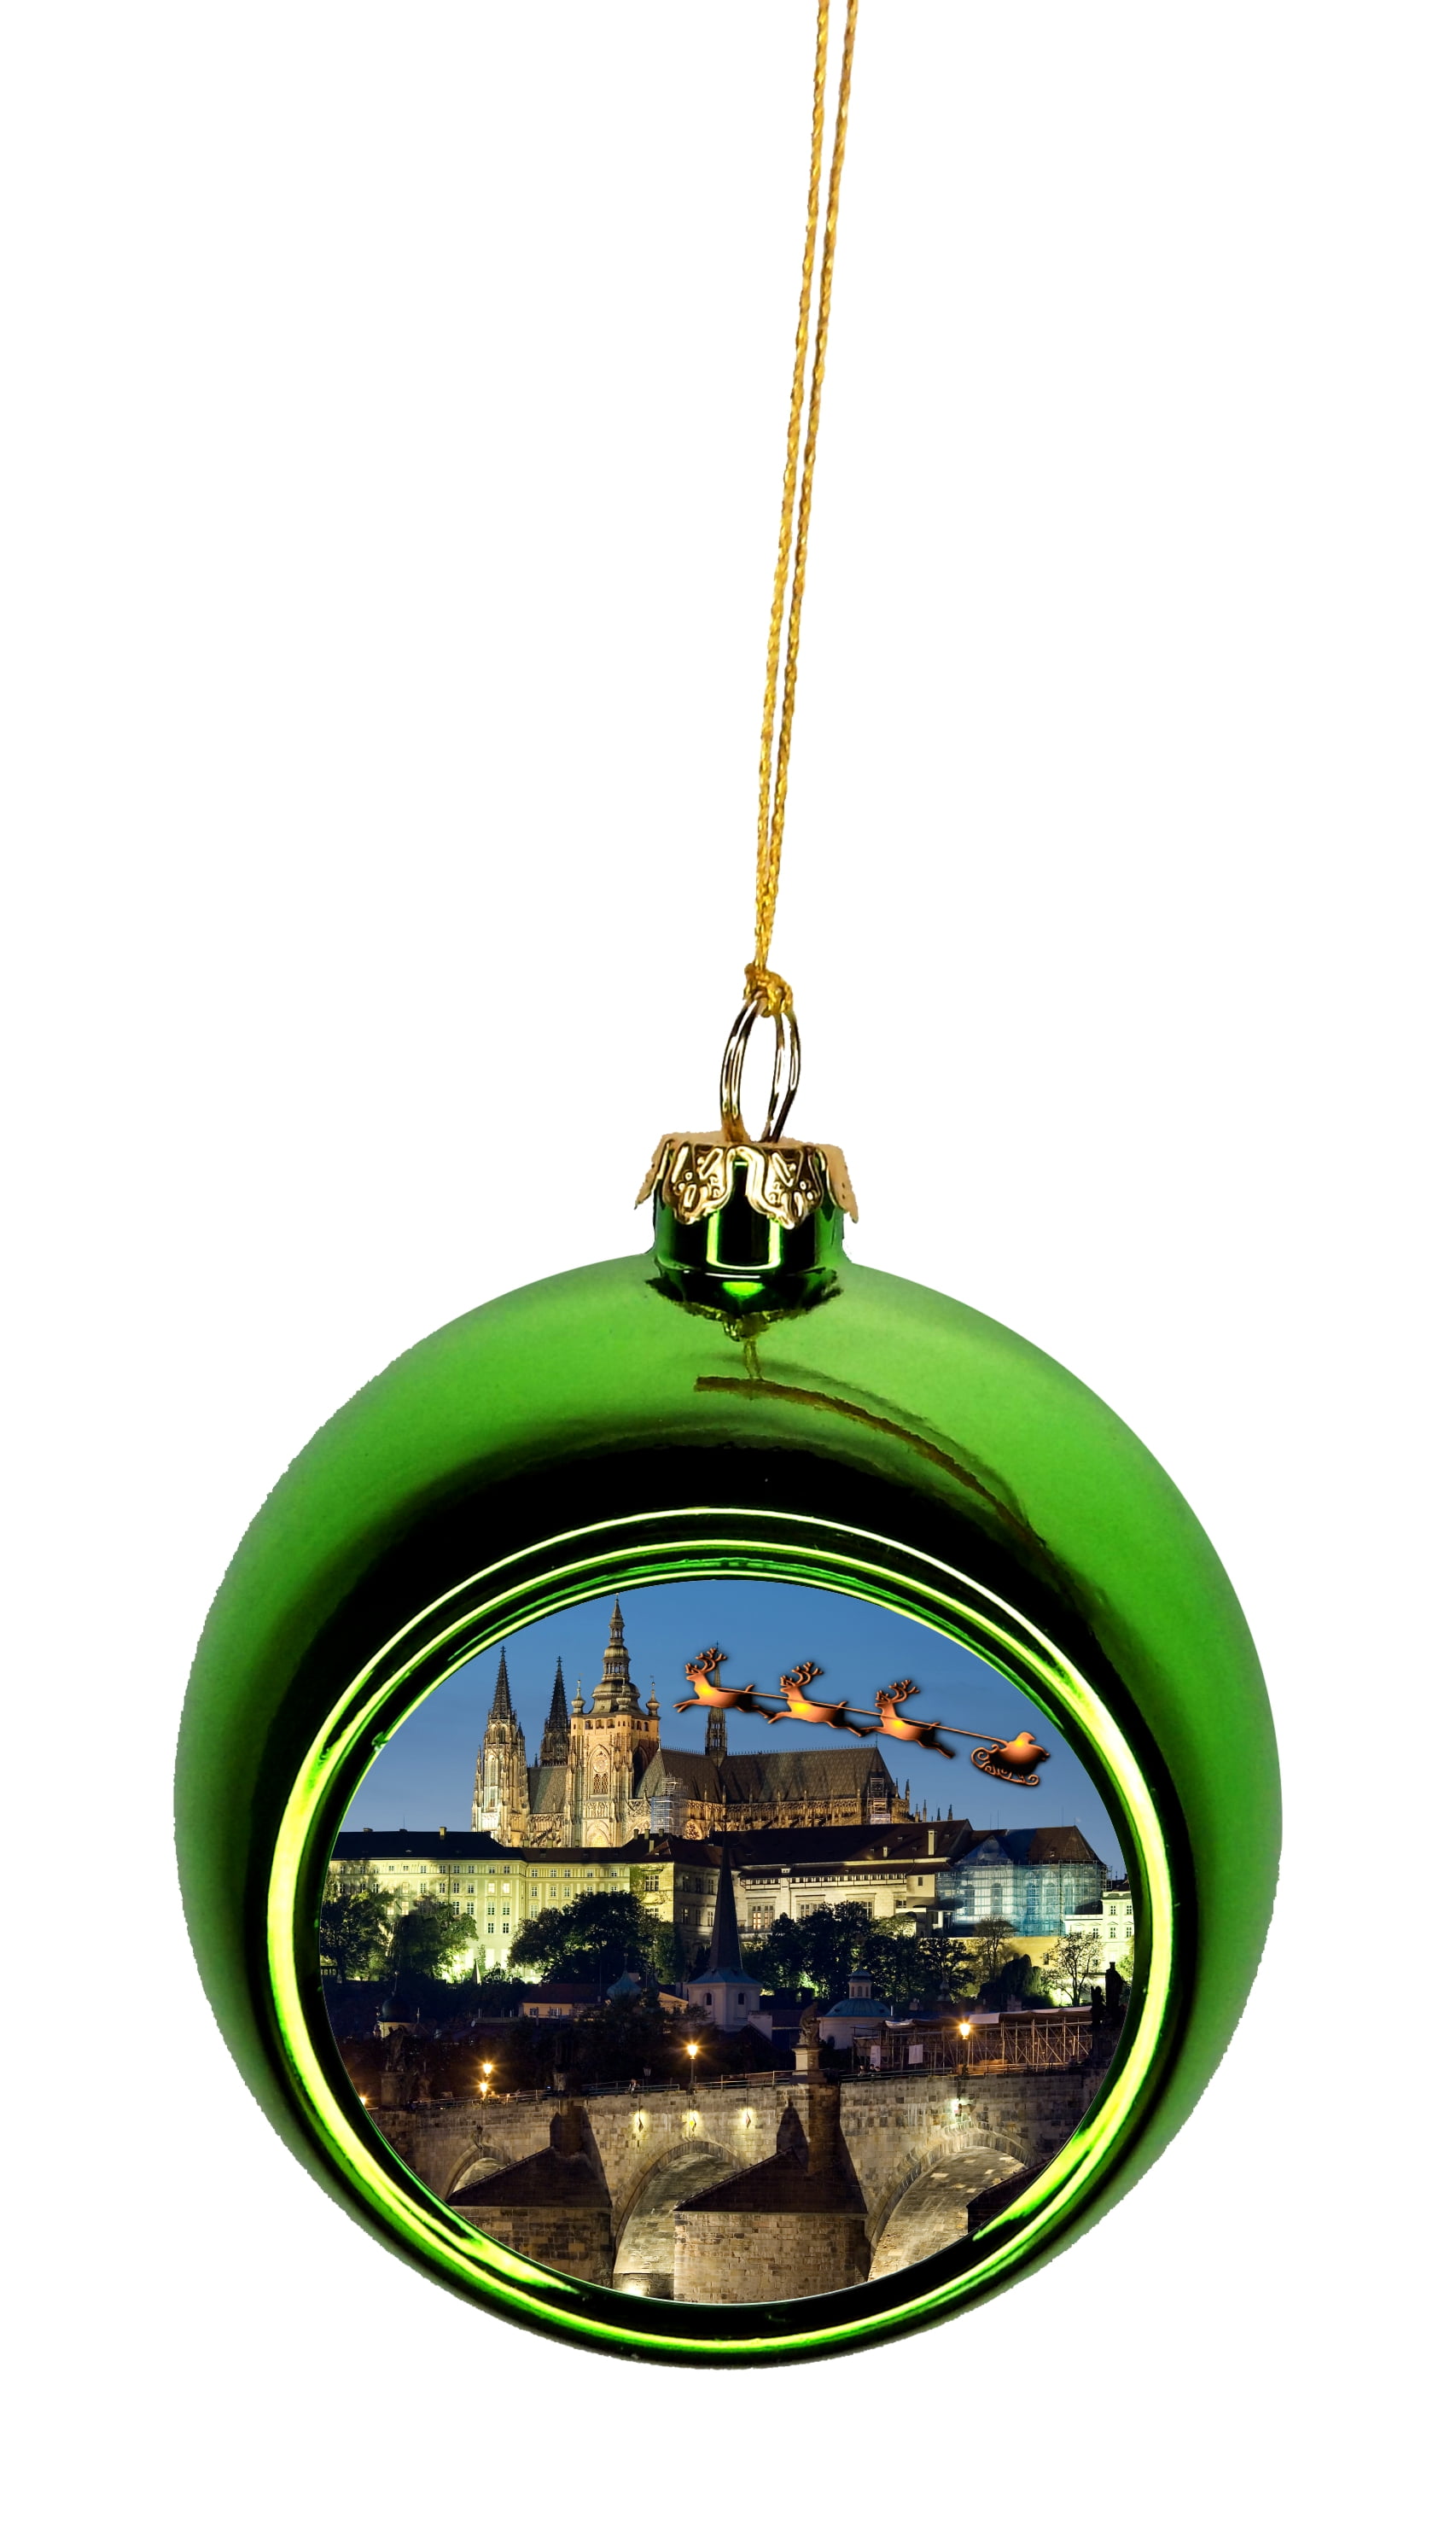 PRAGUE CASTLE CZECH REPUBLIC CHRISTMAS ORNAMENT SOUVENIR GREAT GIFT!